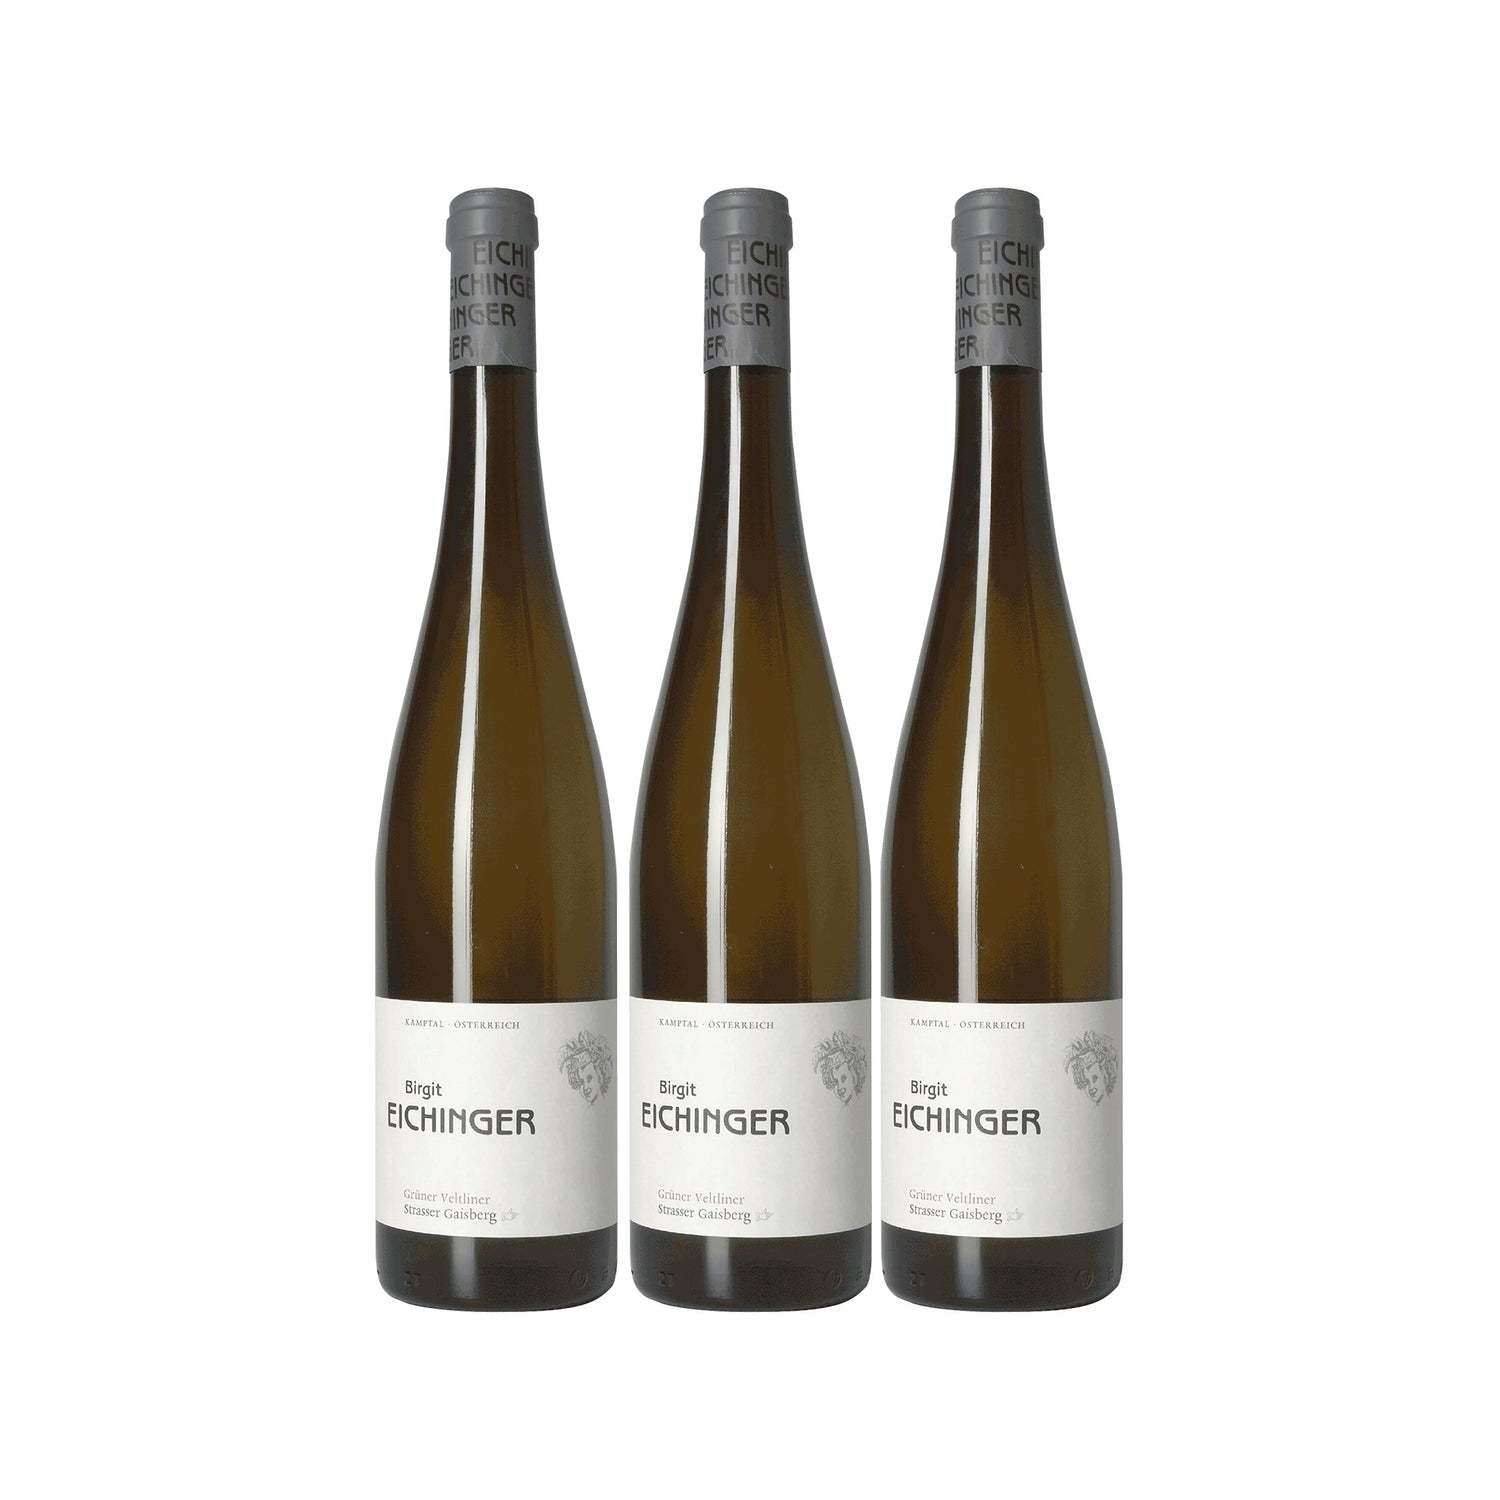 Birgit Eichinger Grüner Veltliner Gaisberg Erste Lage Kamptal Weißwein veganer Wein trocken DAC (3 x 0.75l) - Versanel -